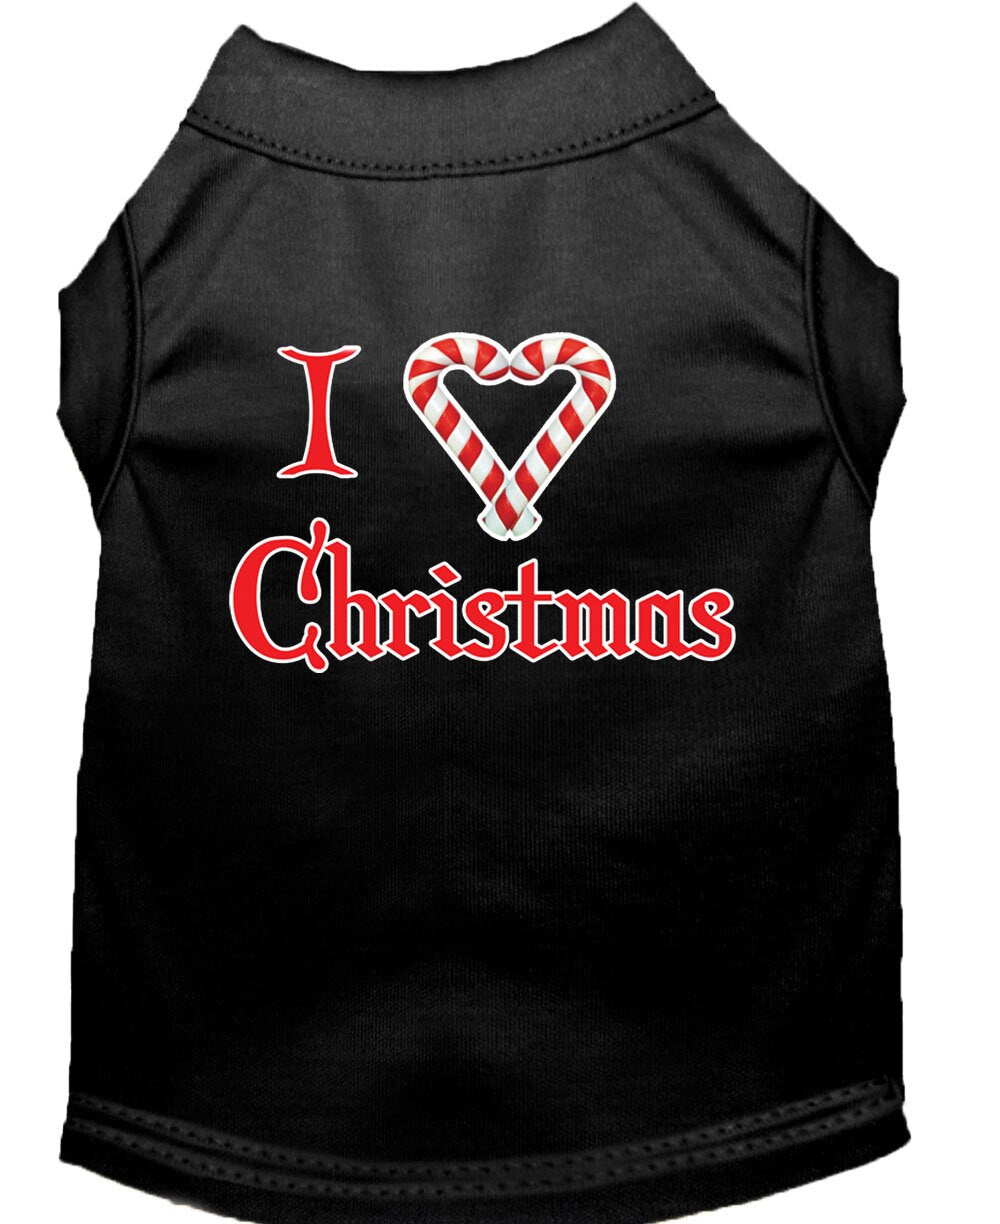 Christmas Screenprinted Dog Shirt, "I Heart Christmas"